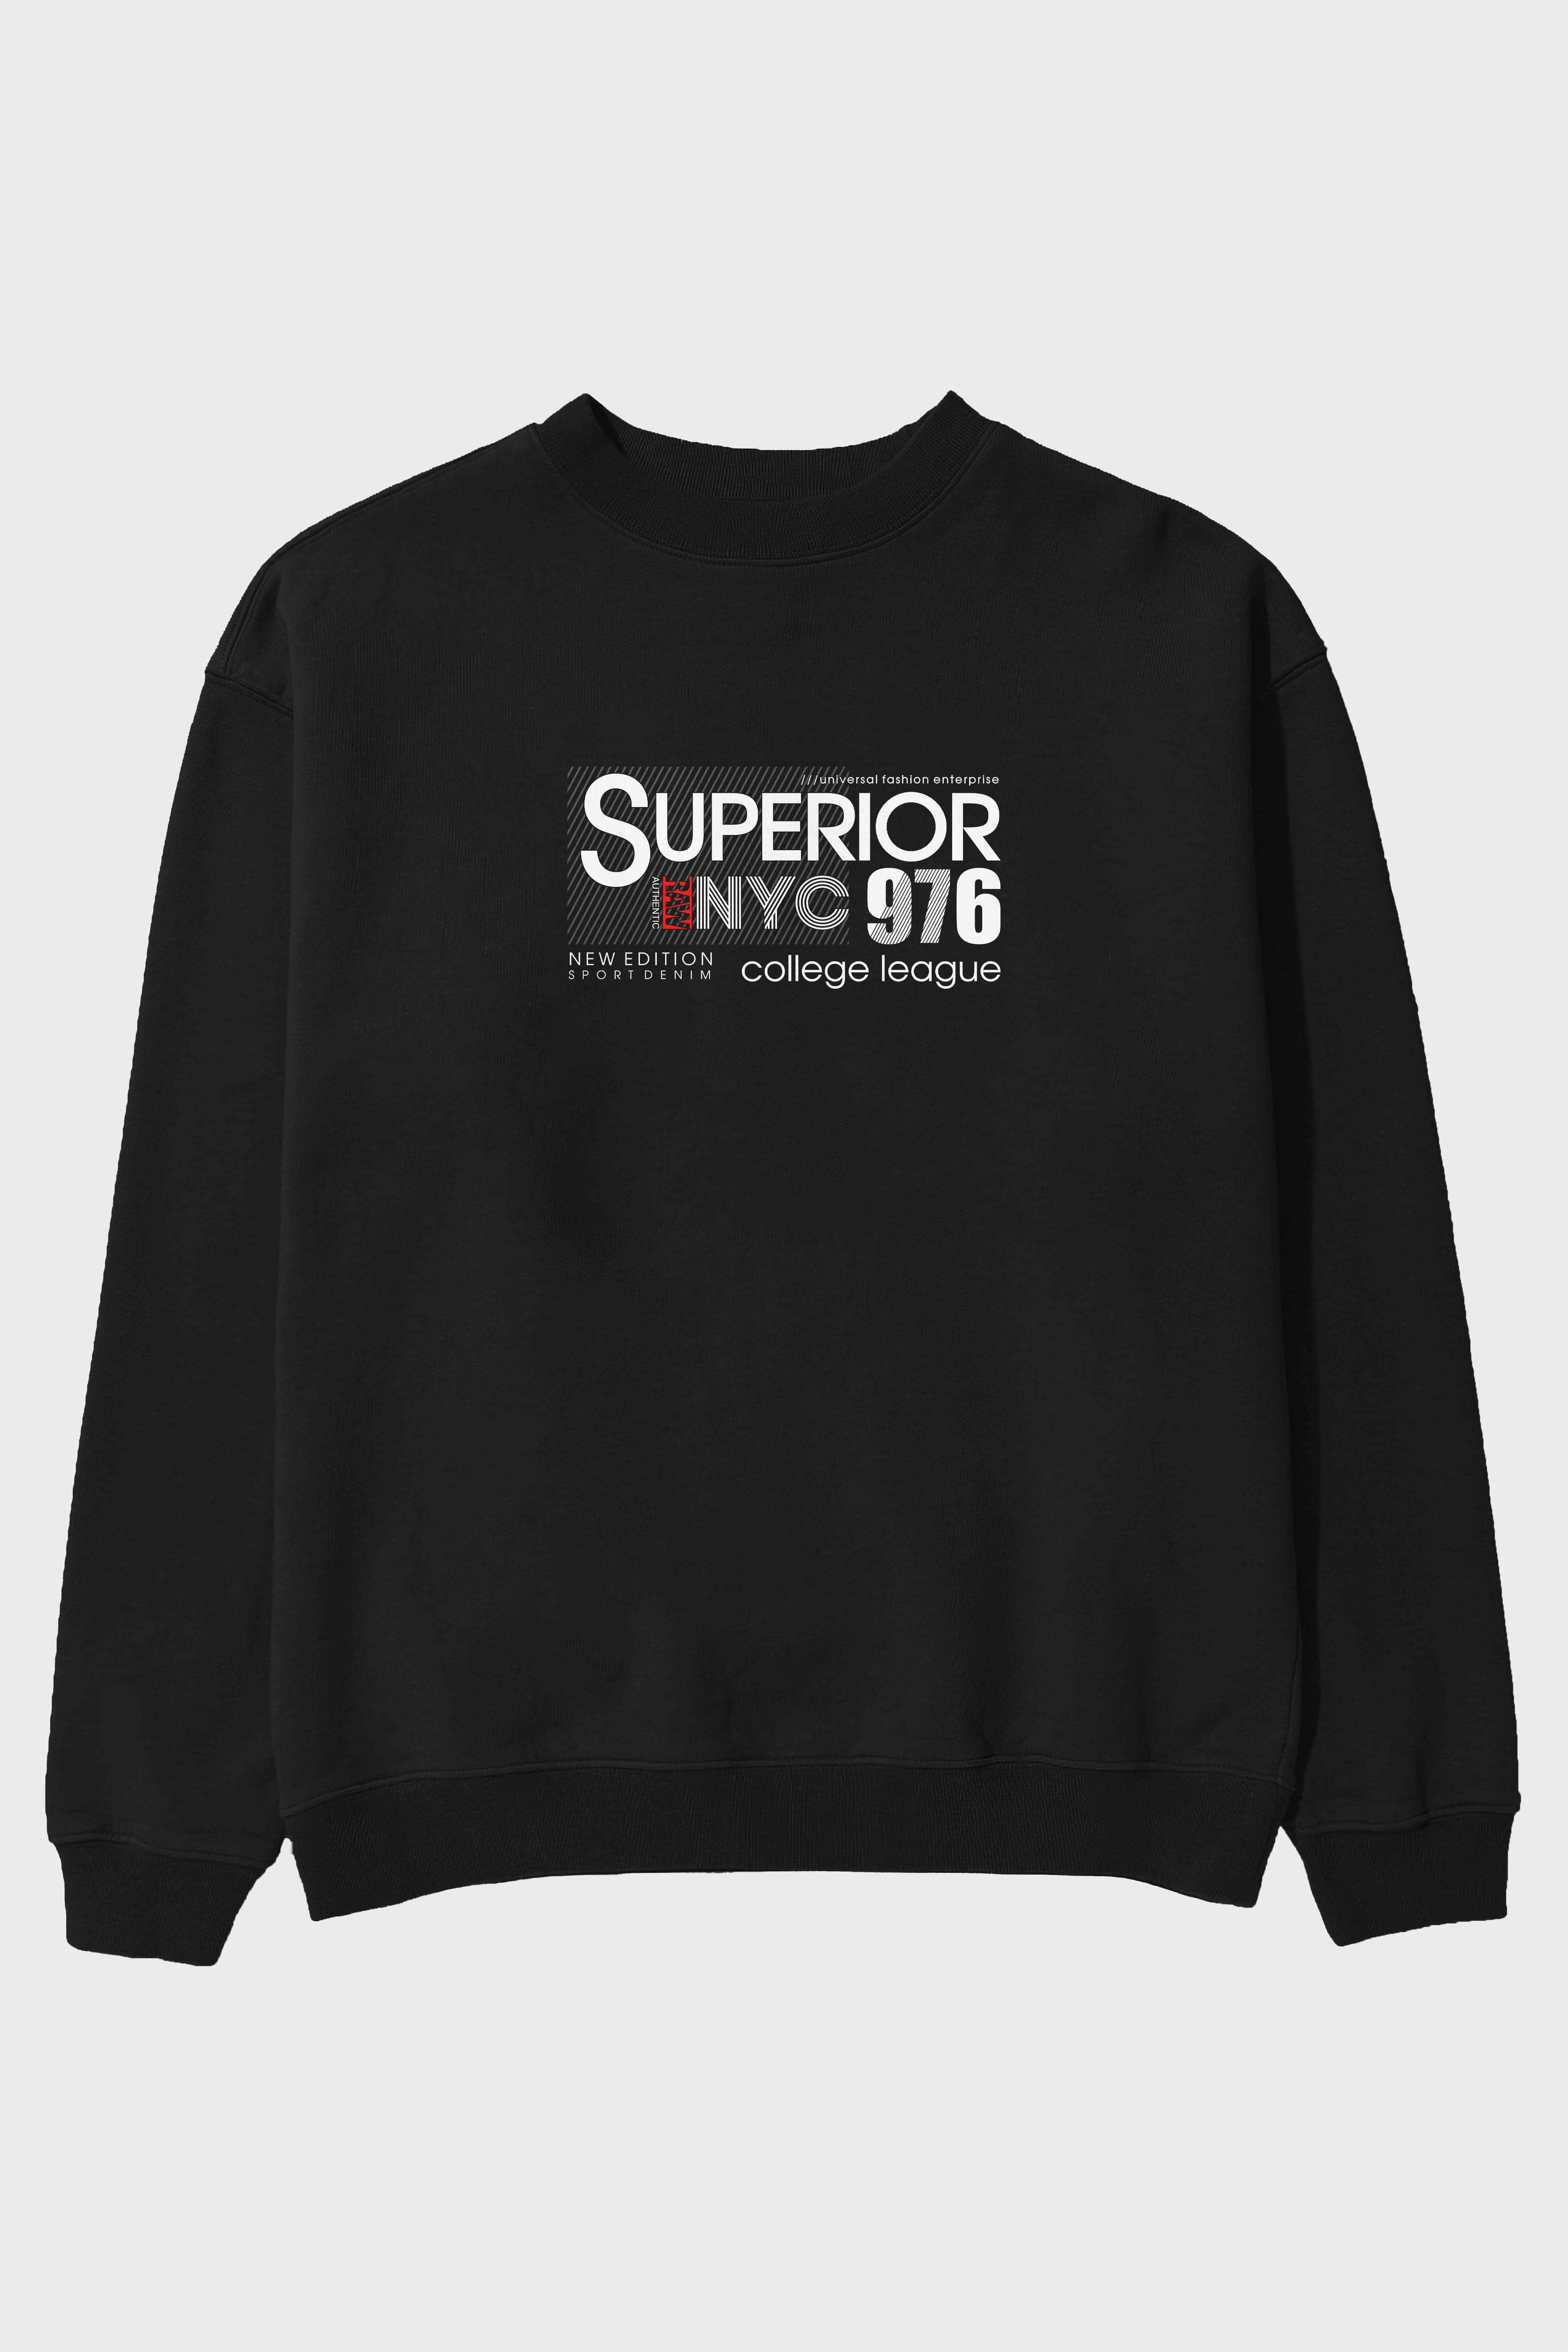 Superior 976 Ön Baskılı Oversize Sweatshirt Erkek Kadın Unisex